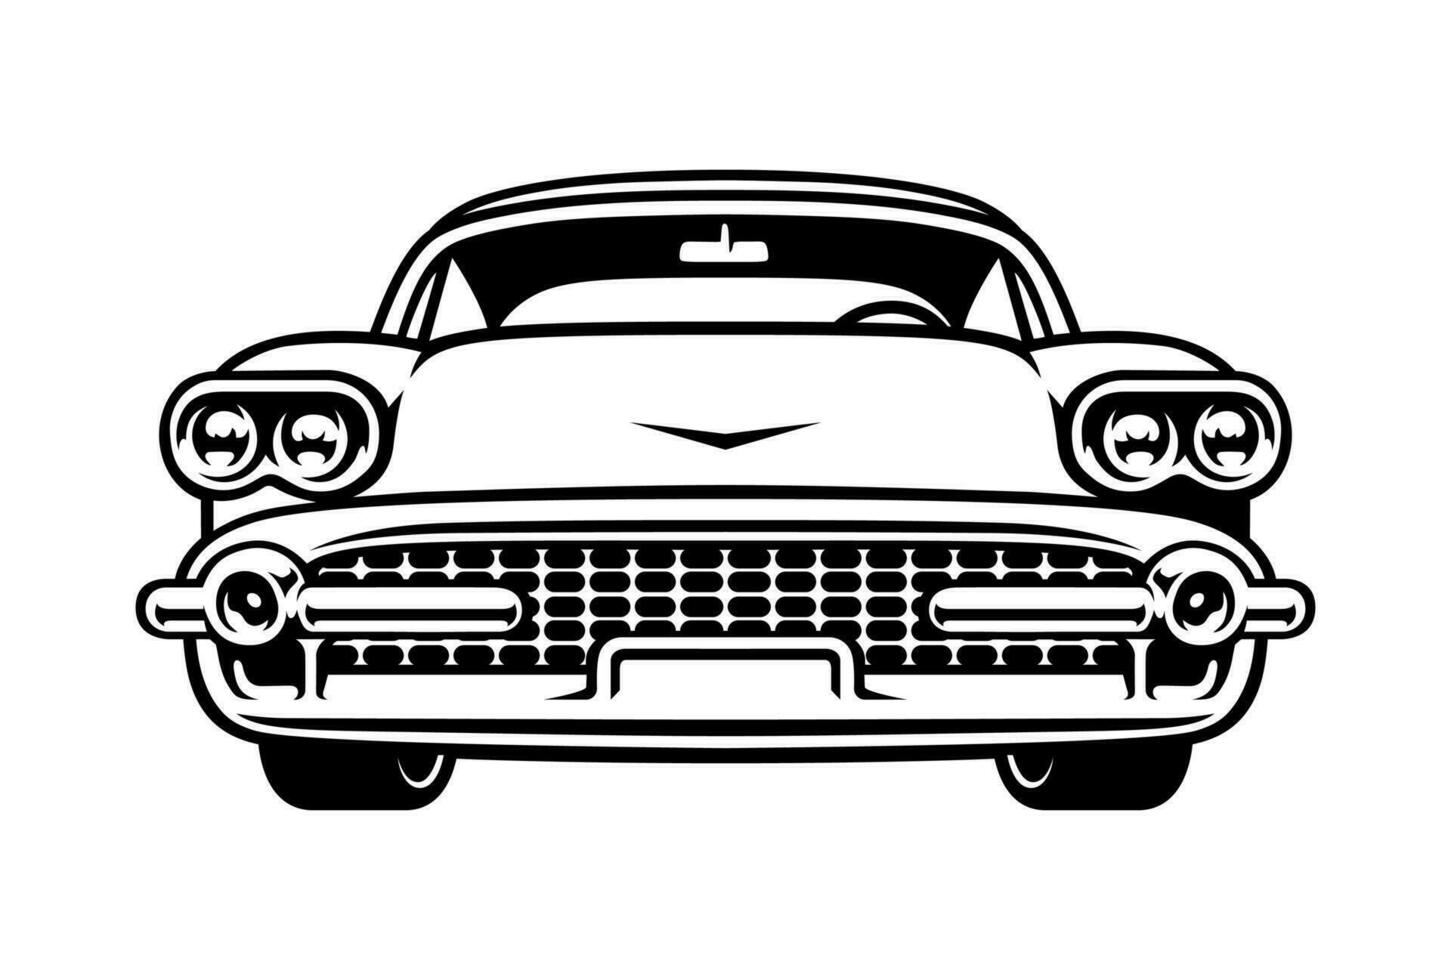 Vintage car illustration vector